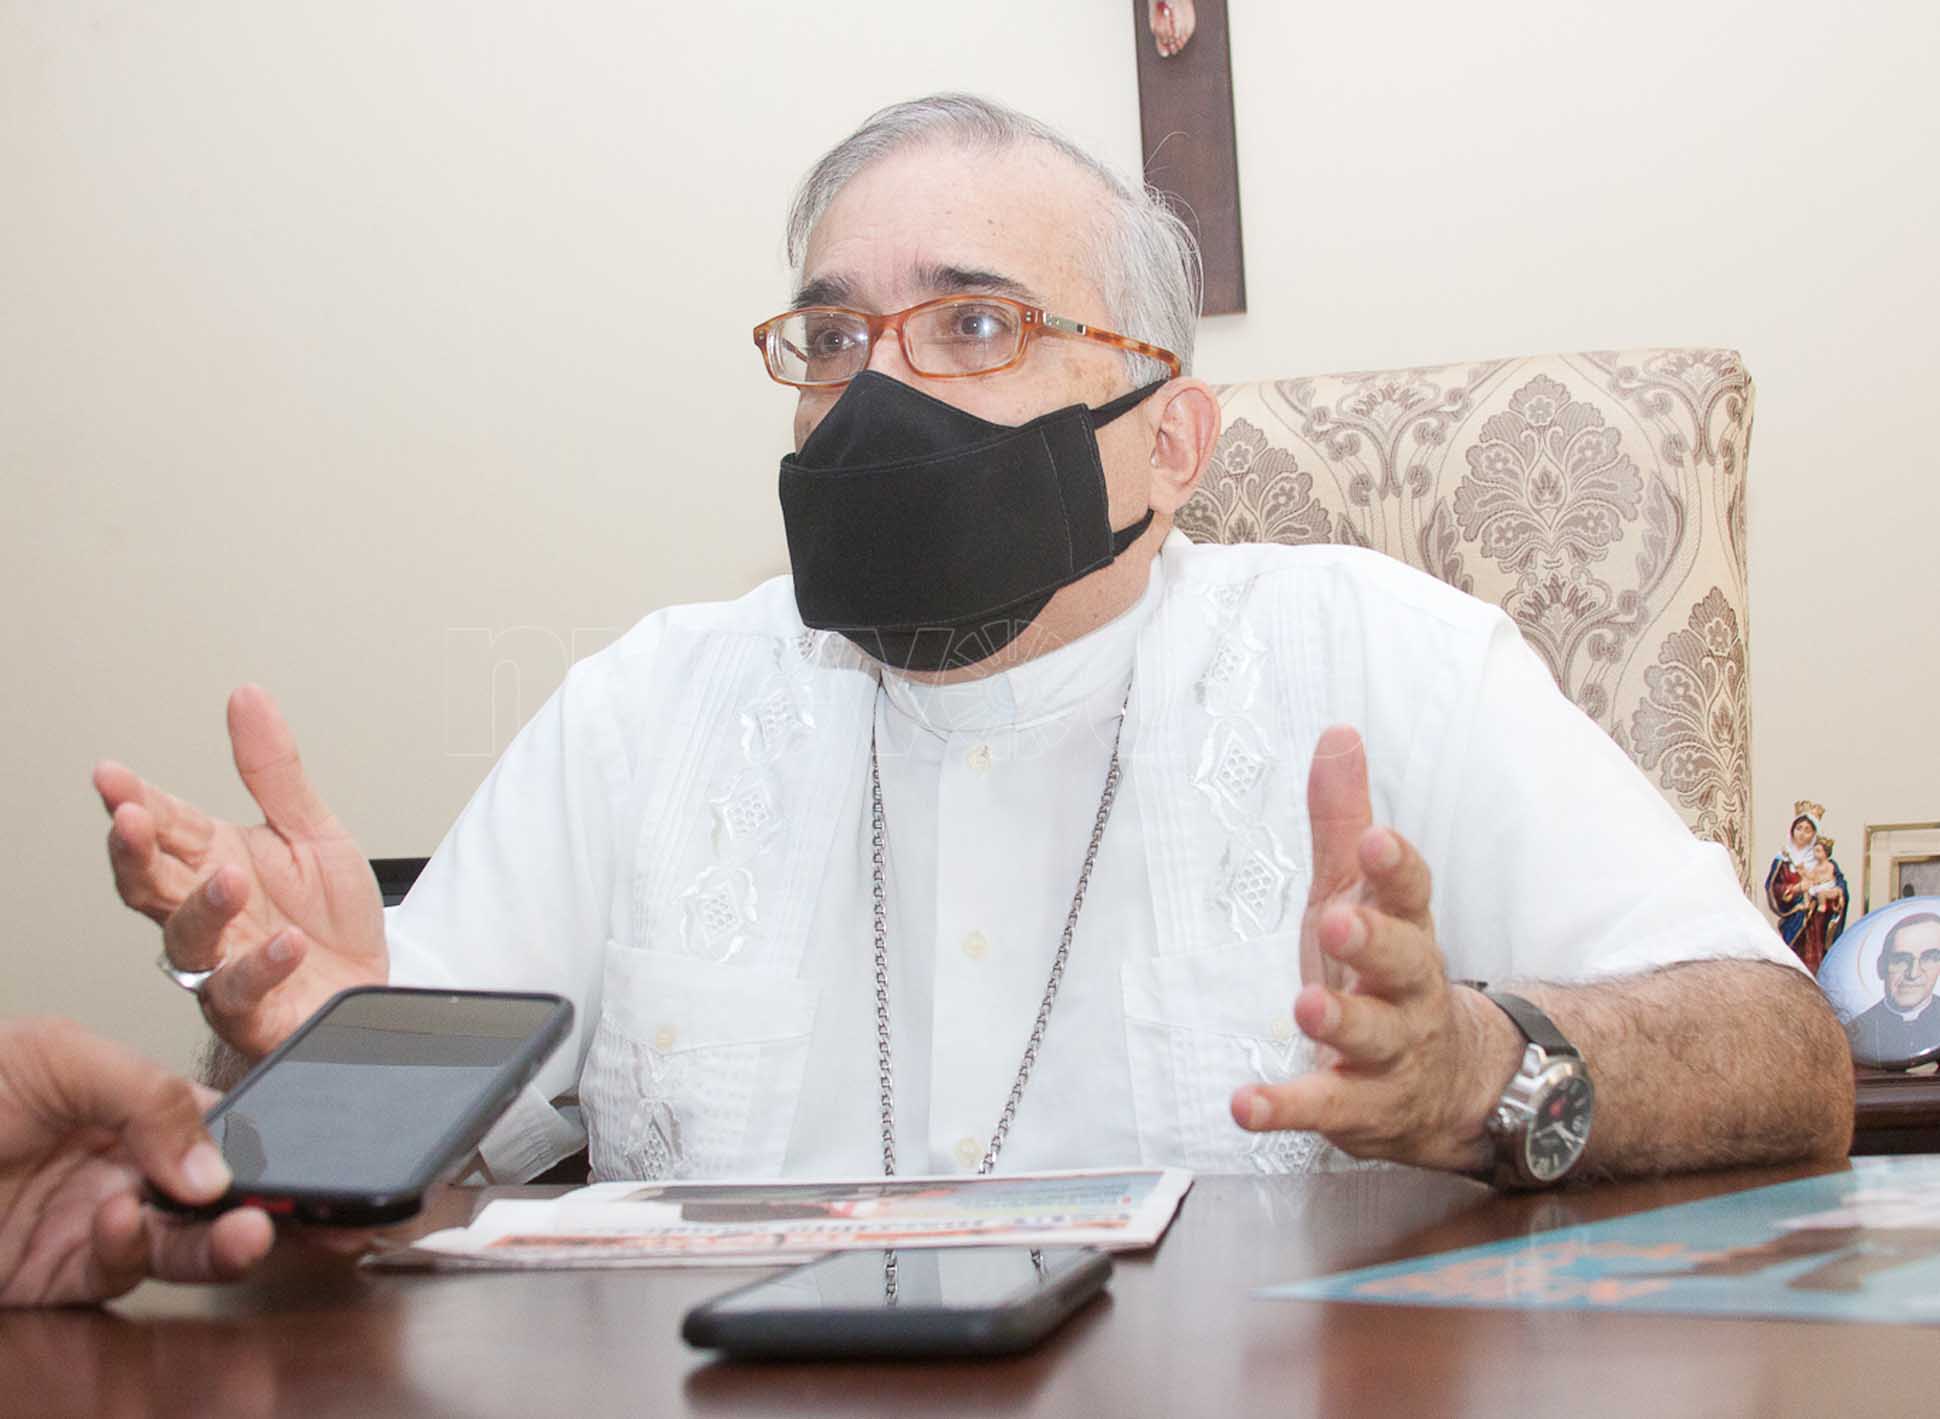  Arzobispo Parra Sandoval: “Hay que jugar limpio y respetar al pueblo”